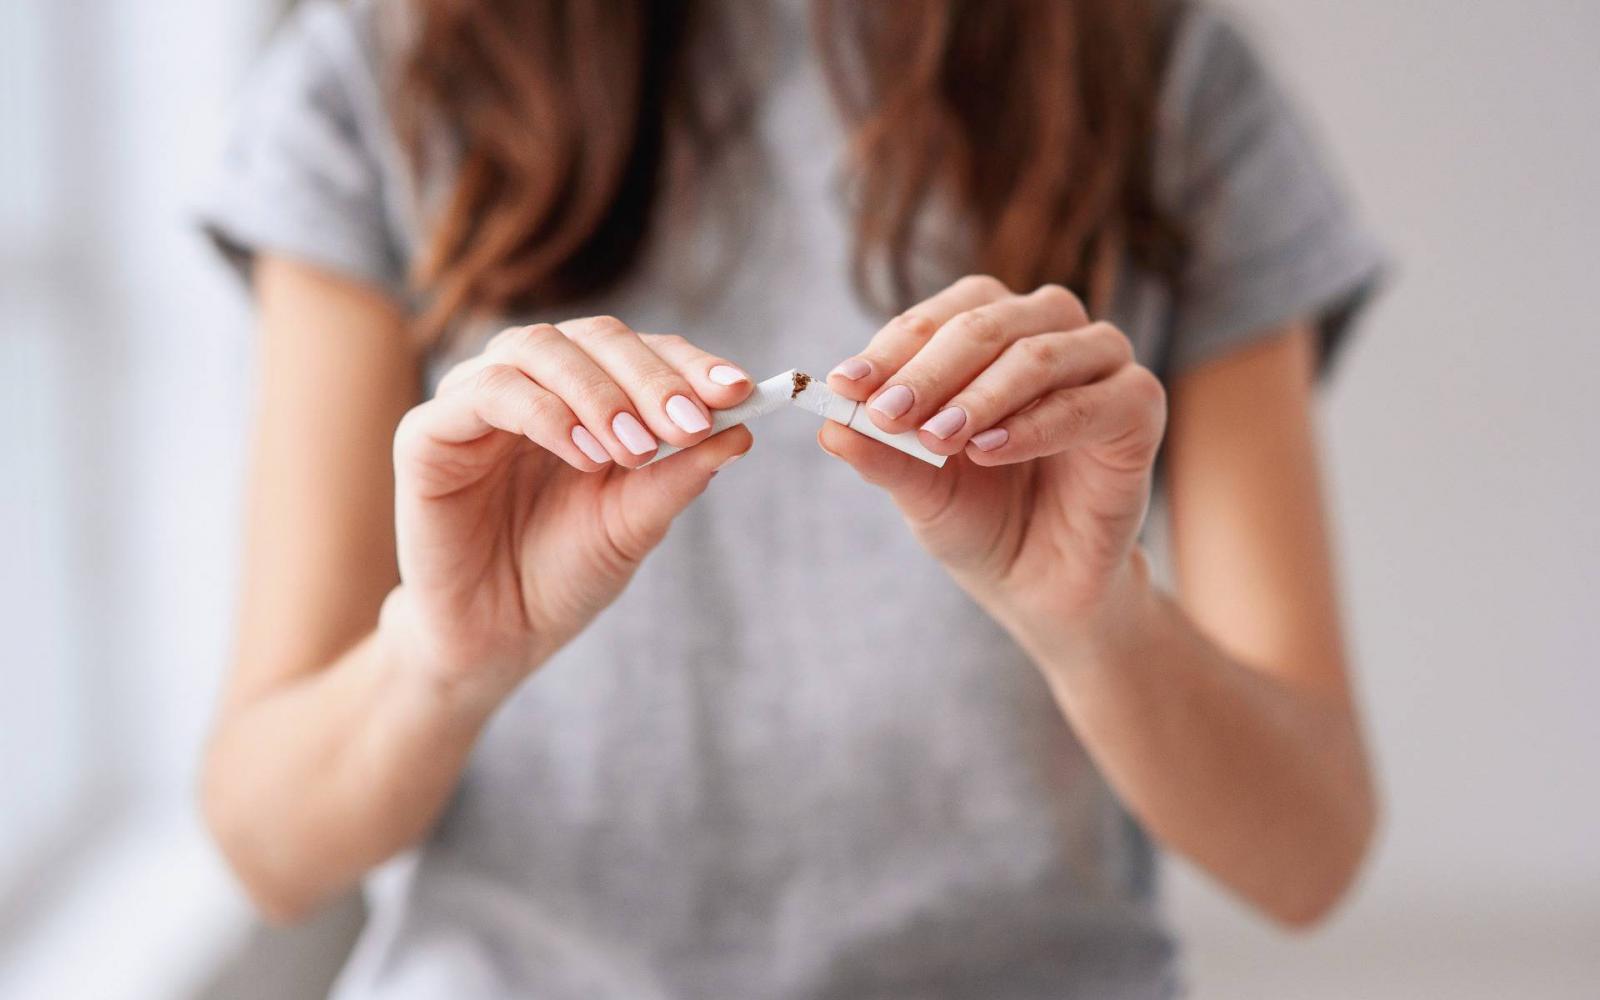 mi segít a dohányzásról való leszokásban